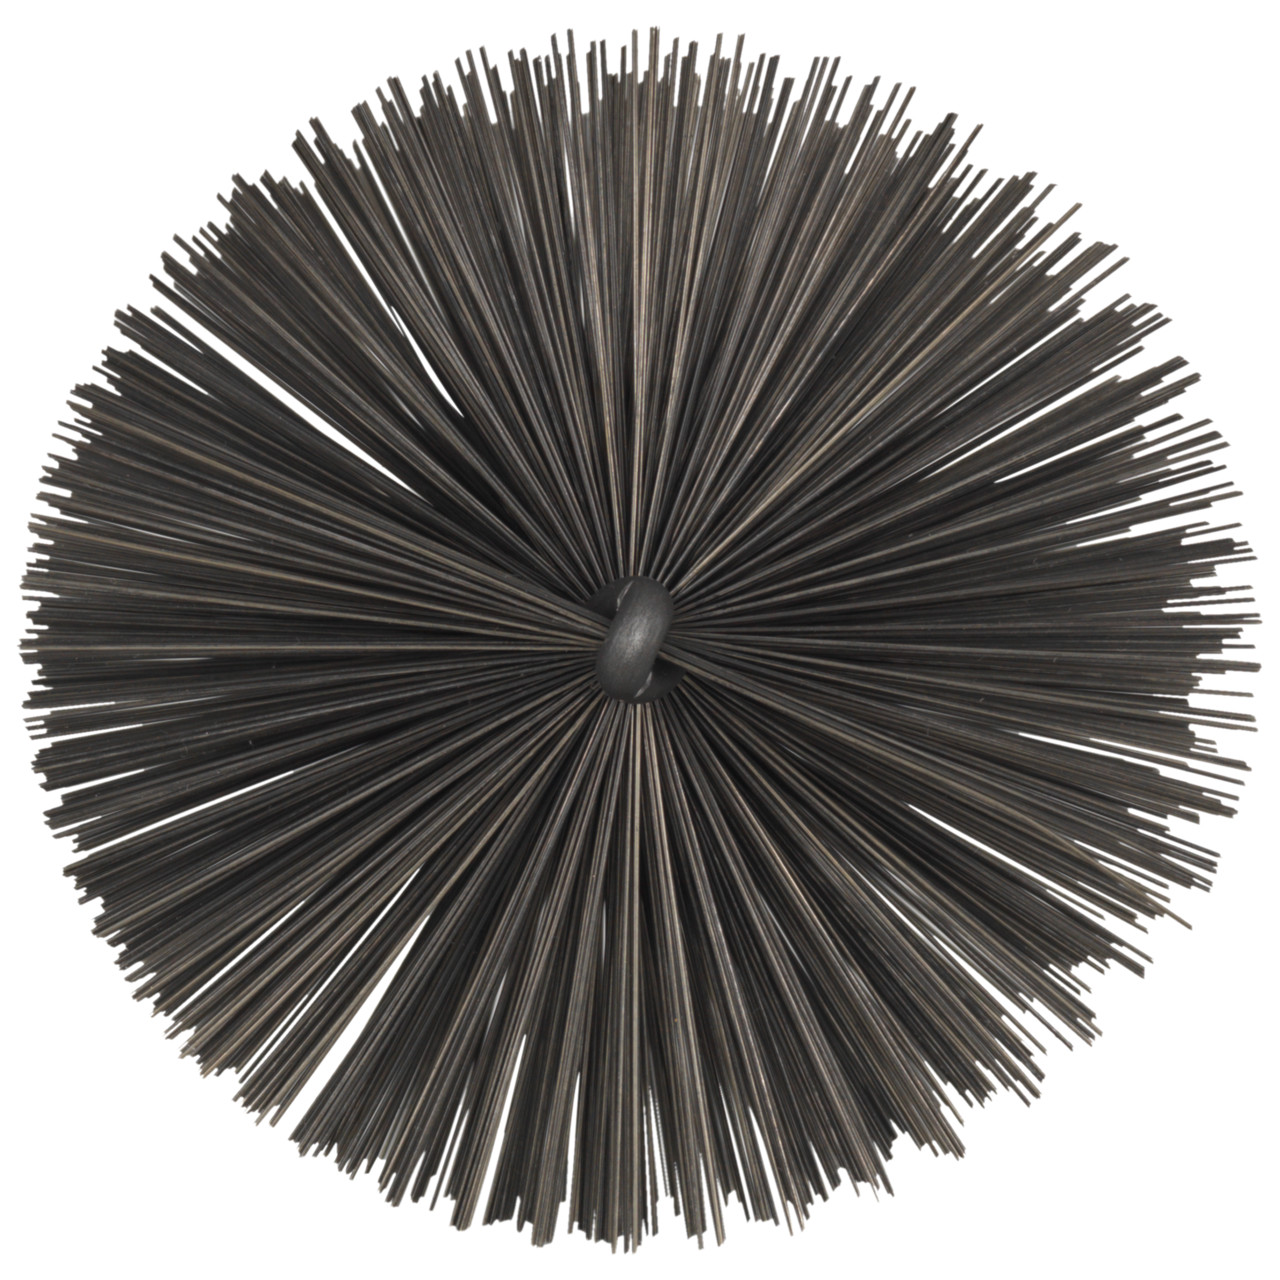 Tyrolit Brosse tubulaire avec filetage extérieur DxGE-I 63xW1/2-160 Pour l'acier, forme : 18ROGDG - (brosse tubulaire), art. 34203606